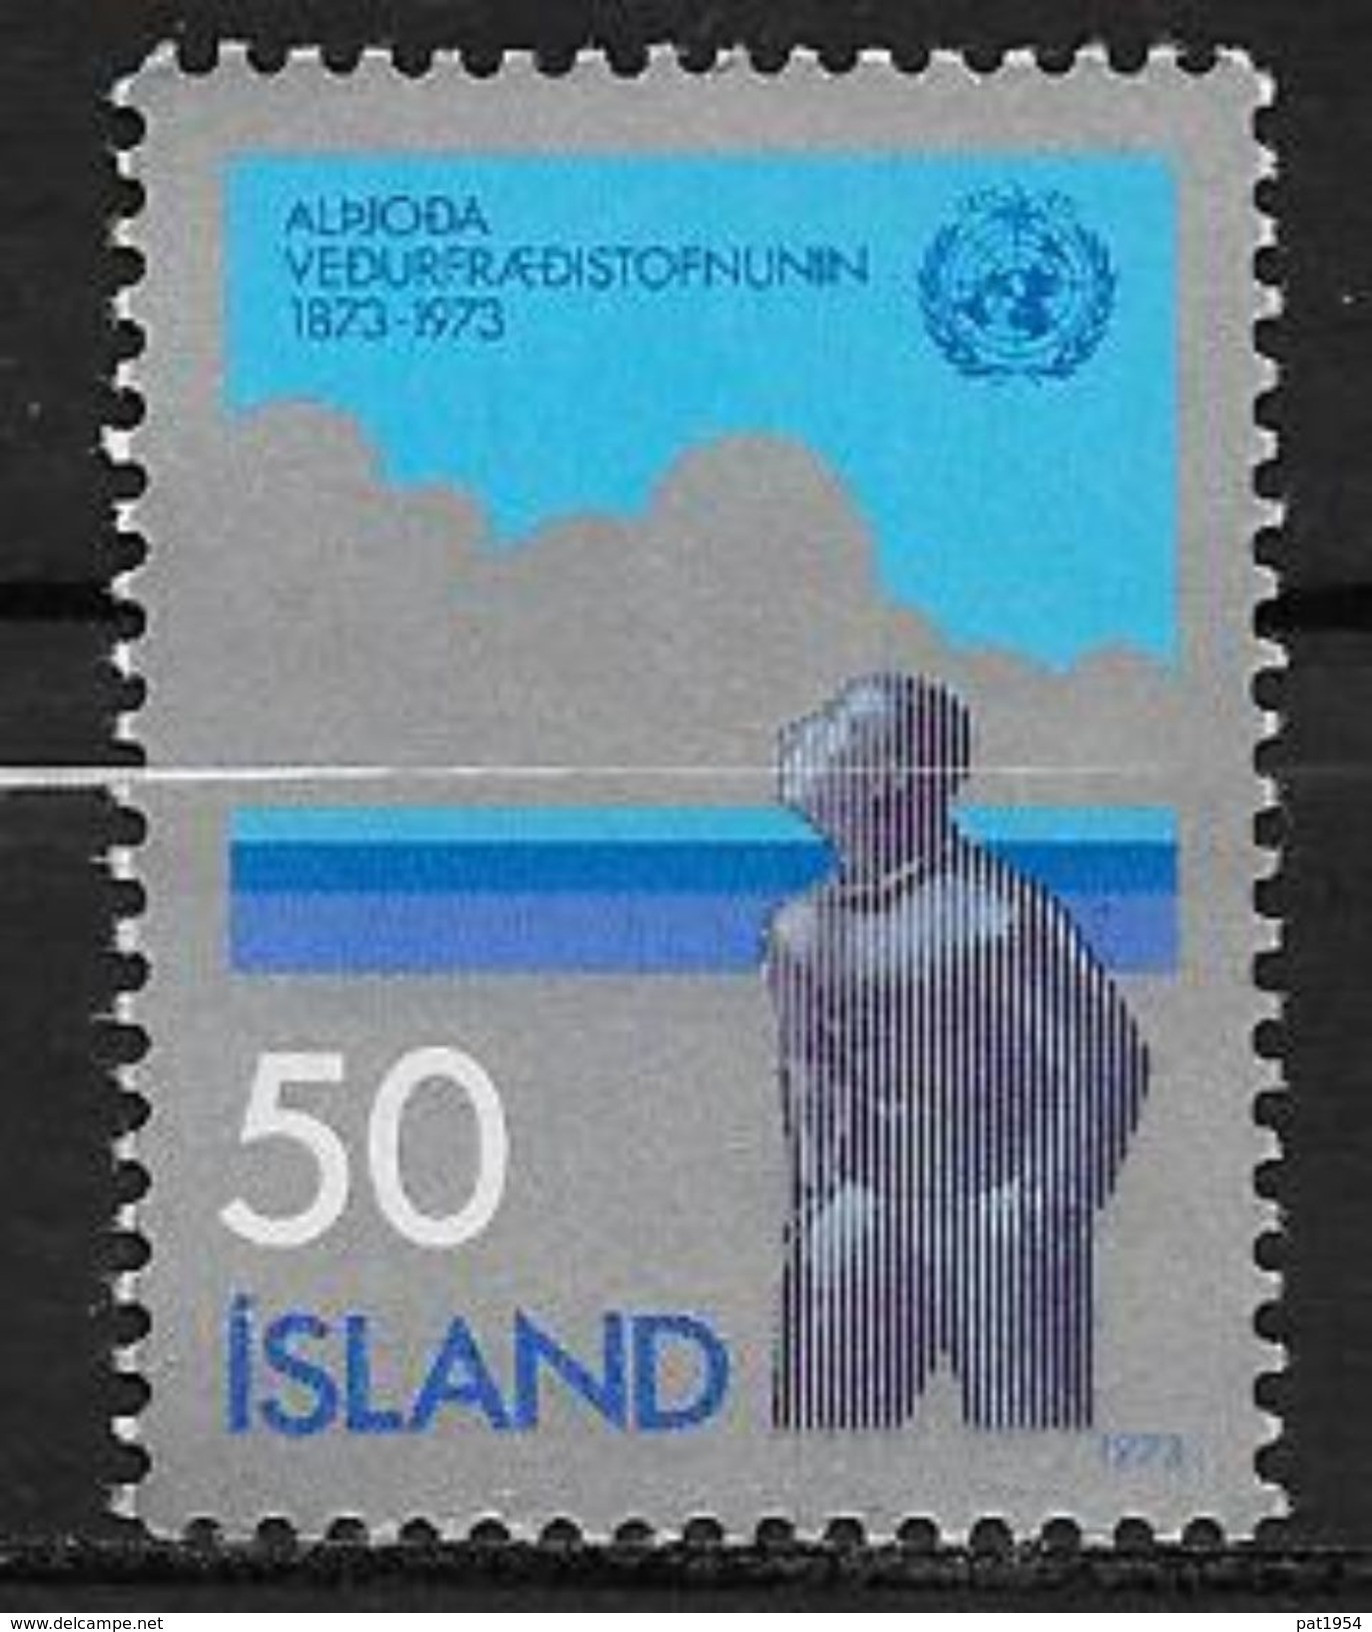 Islande 1973 N° 437  Neuf ** MNH Météolorogie - Ongebruikt